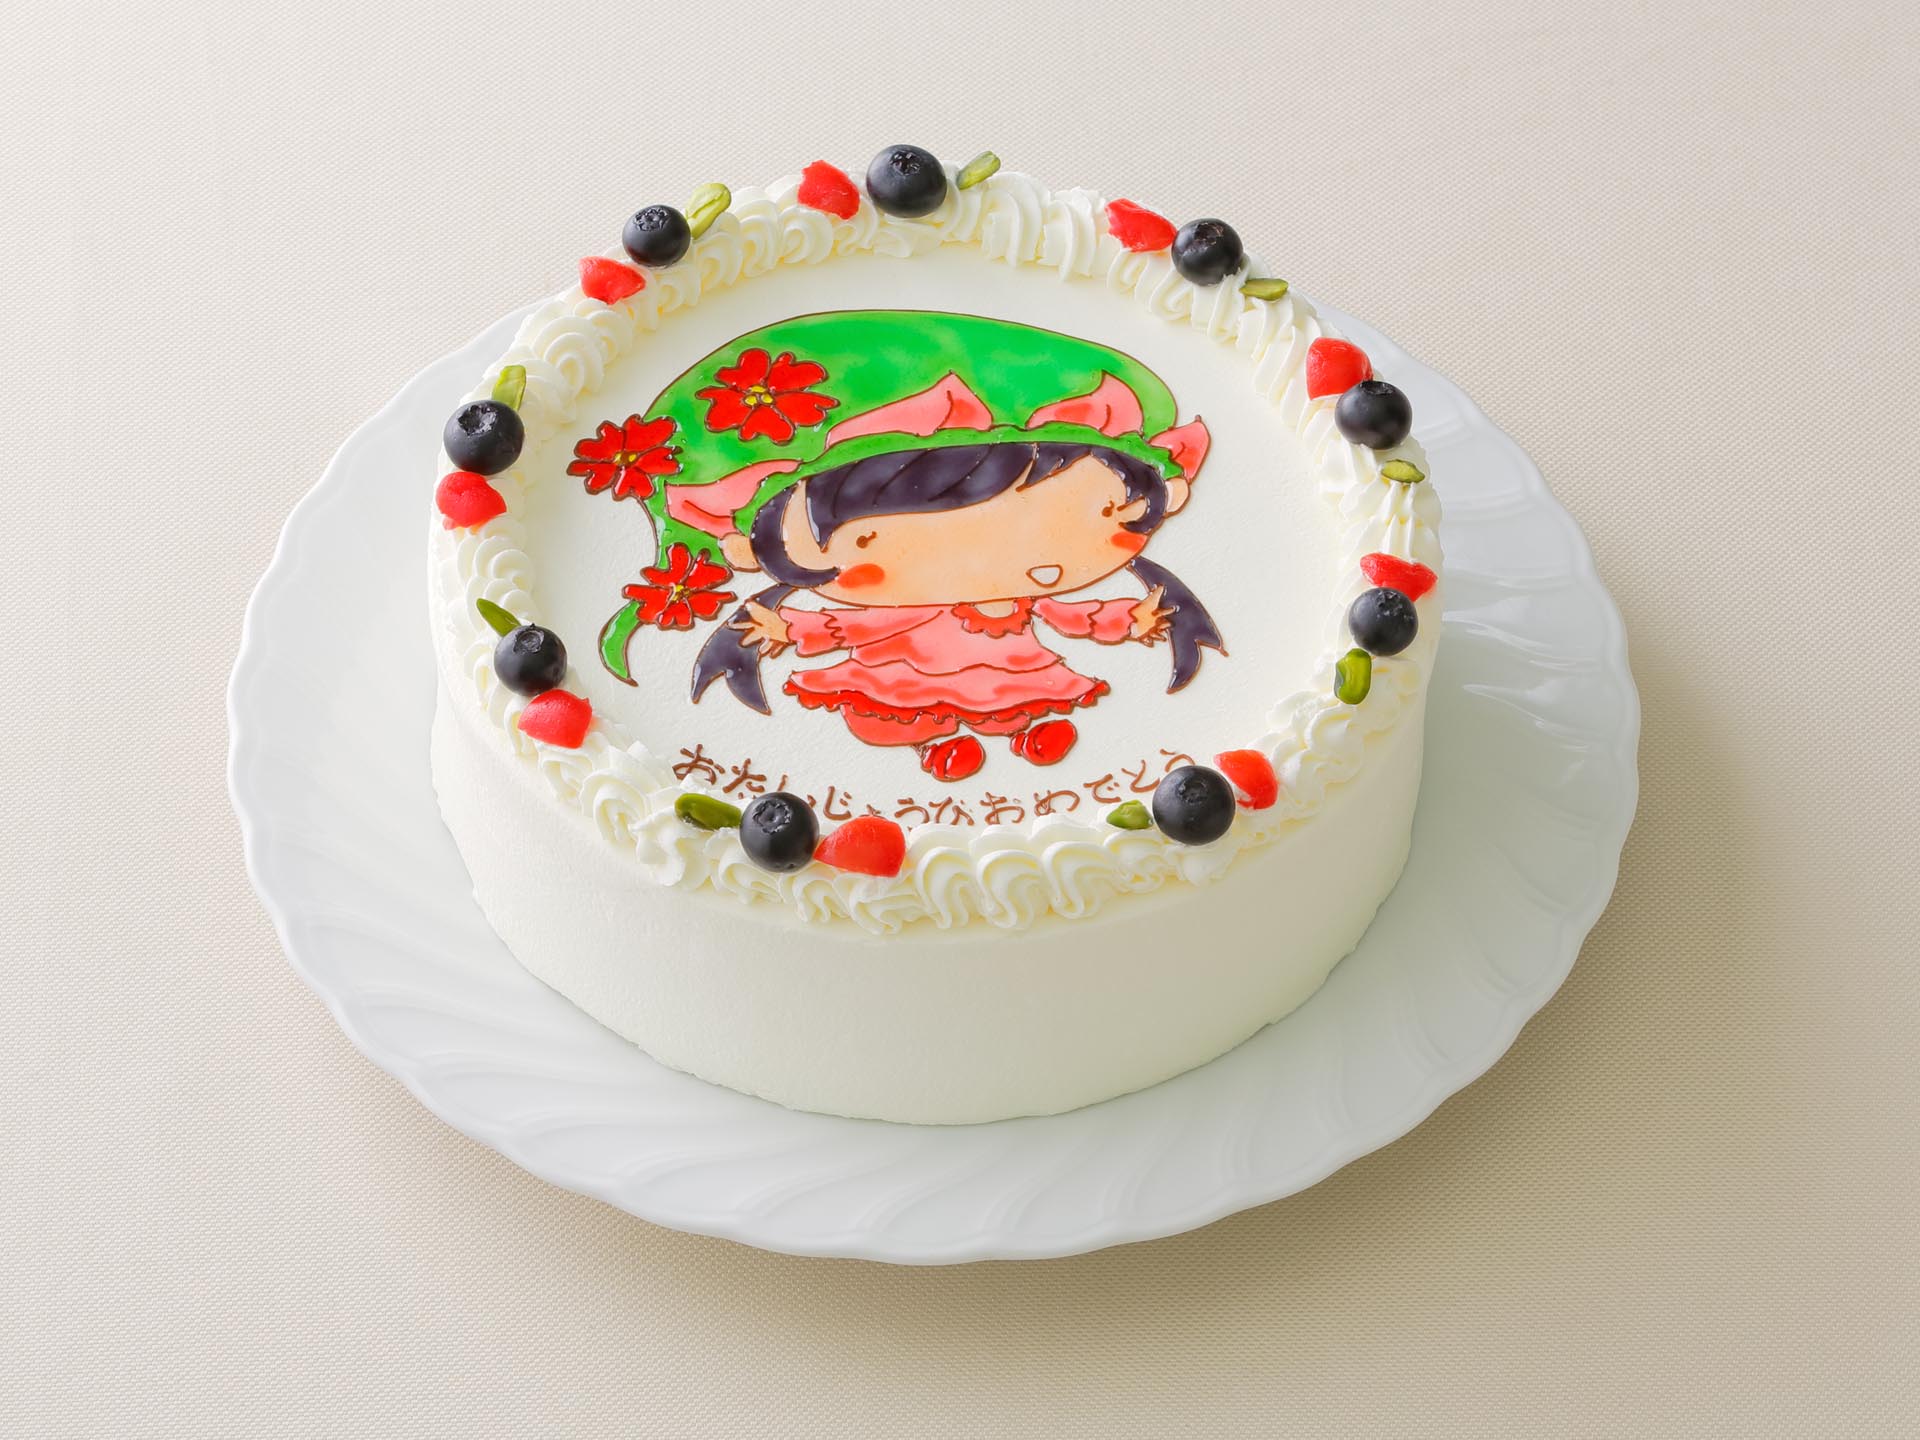 Lubre特集 新潟で評判のキャラケーキおすすめ店ランキング キャラケーキ専門ガイド Lubre